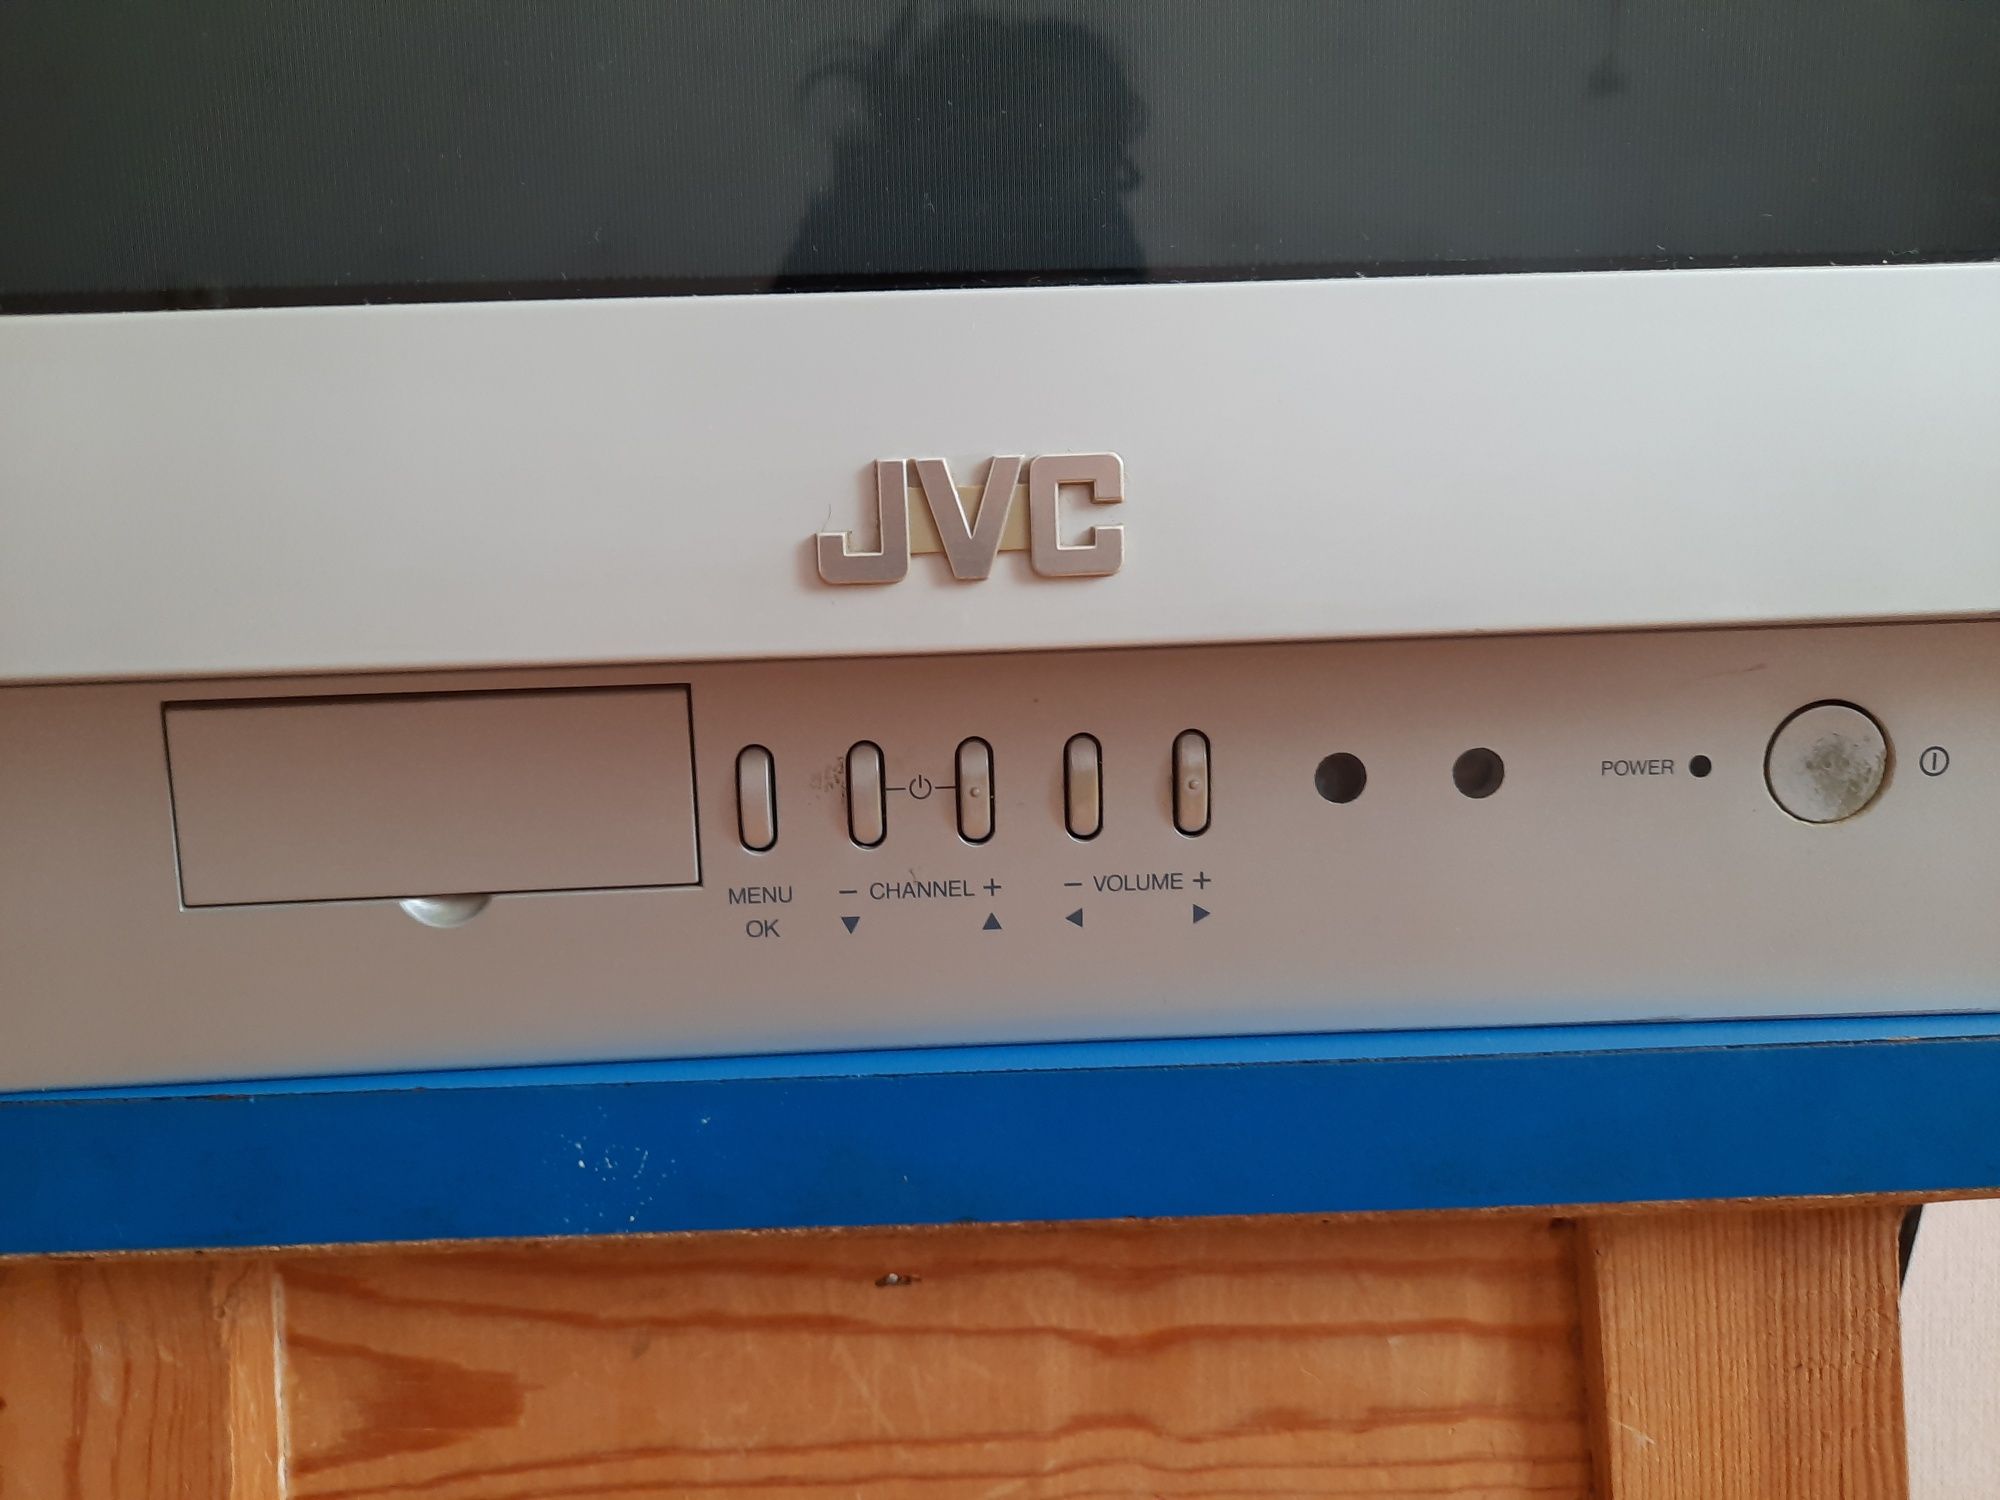 Телевизор JVC в рабочем состоянии